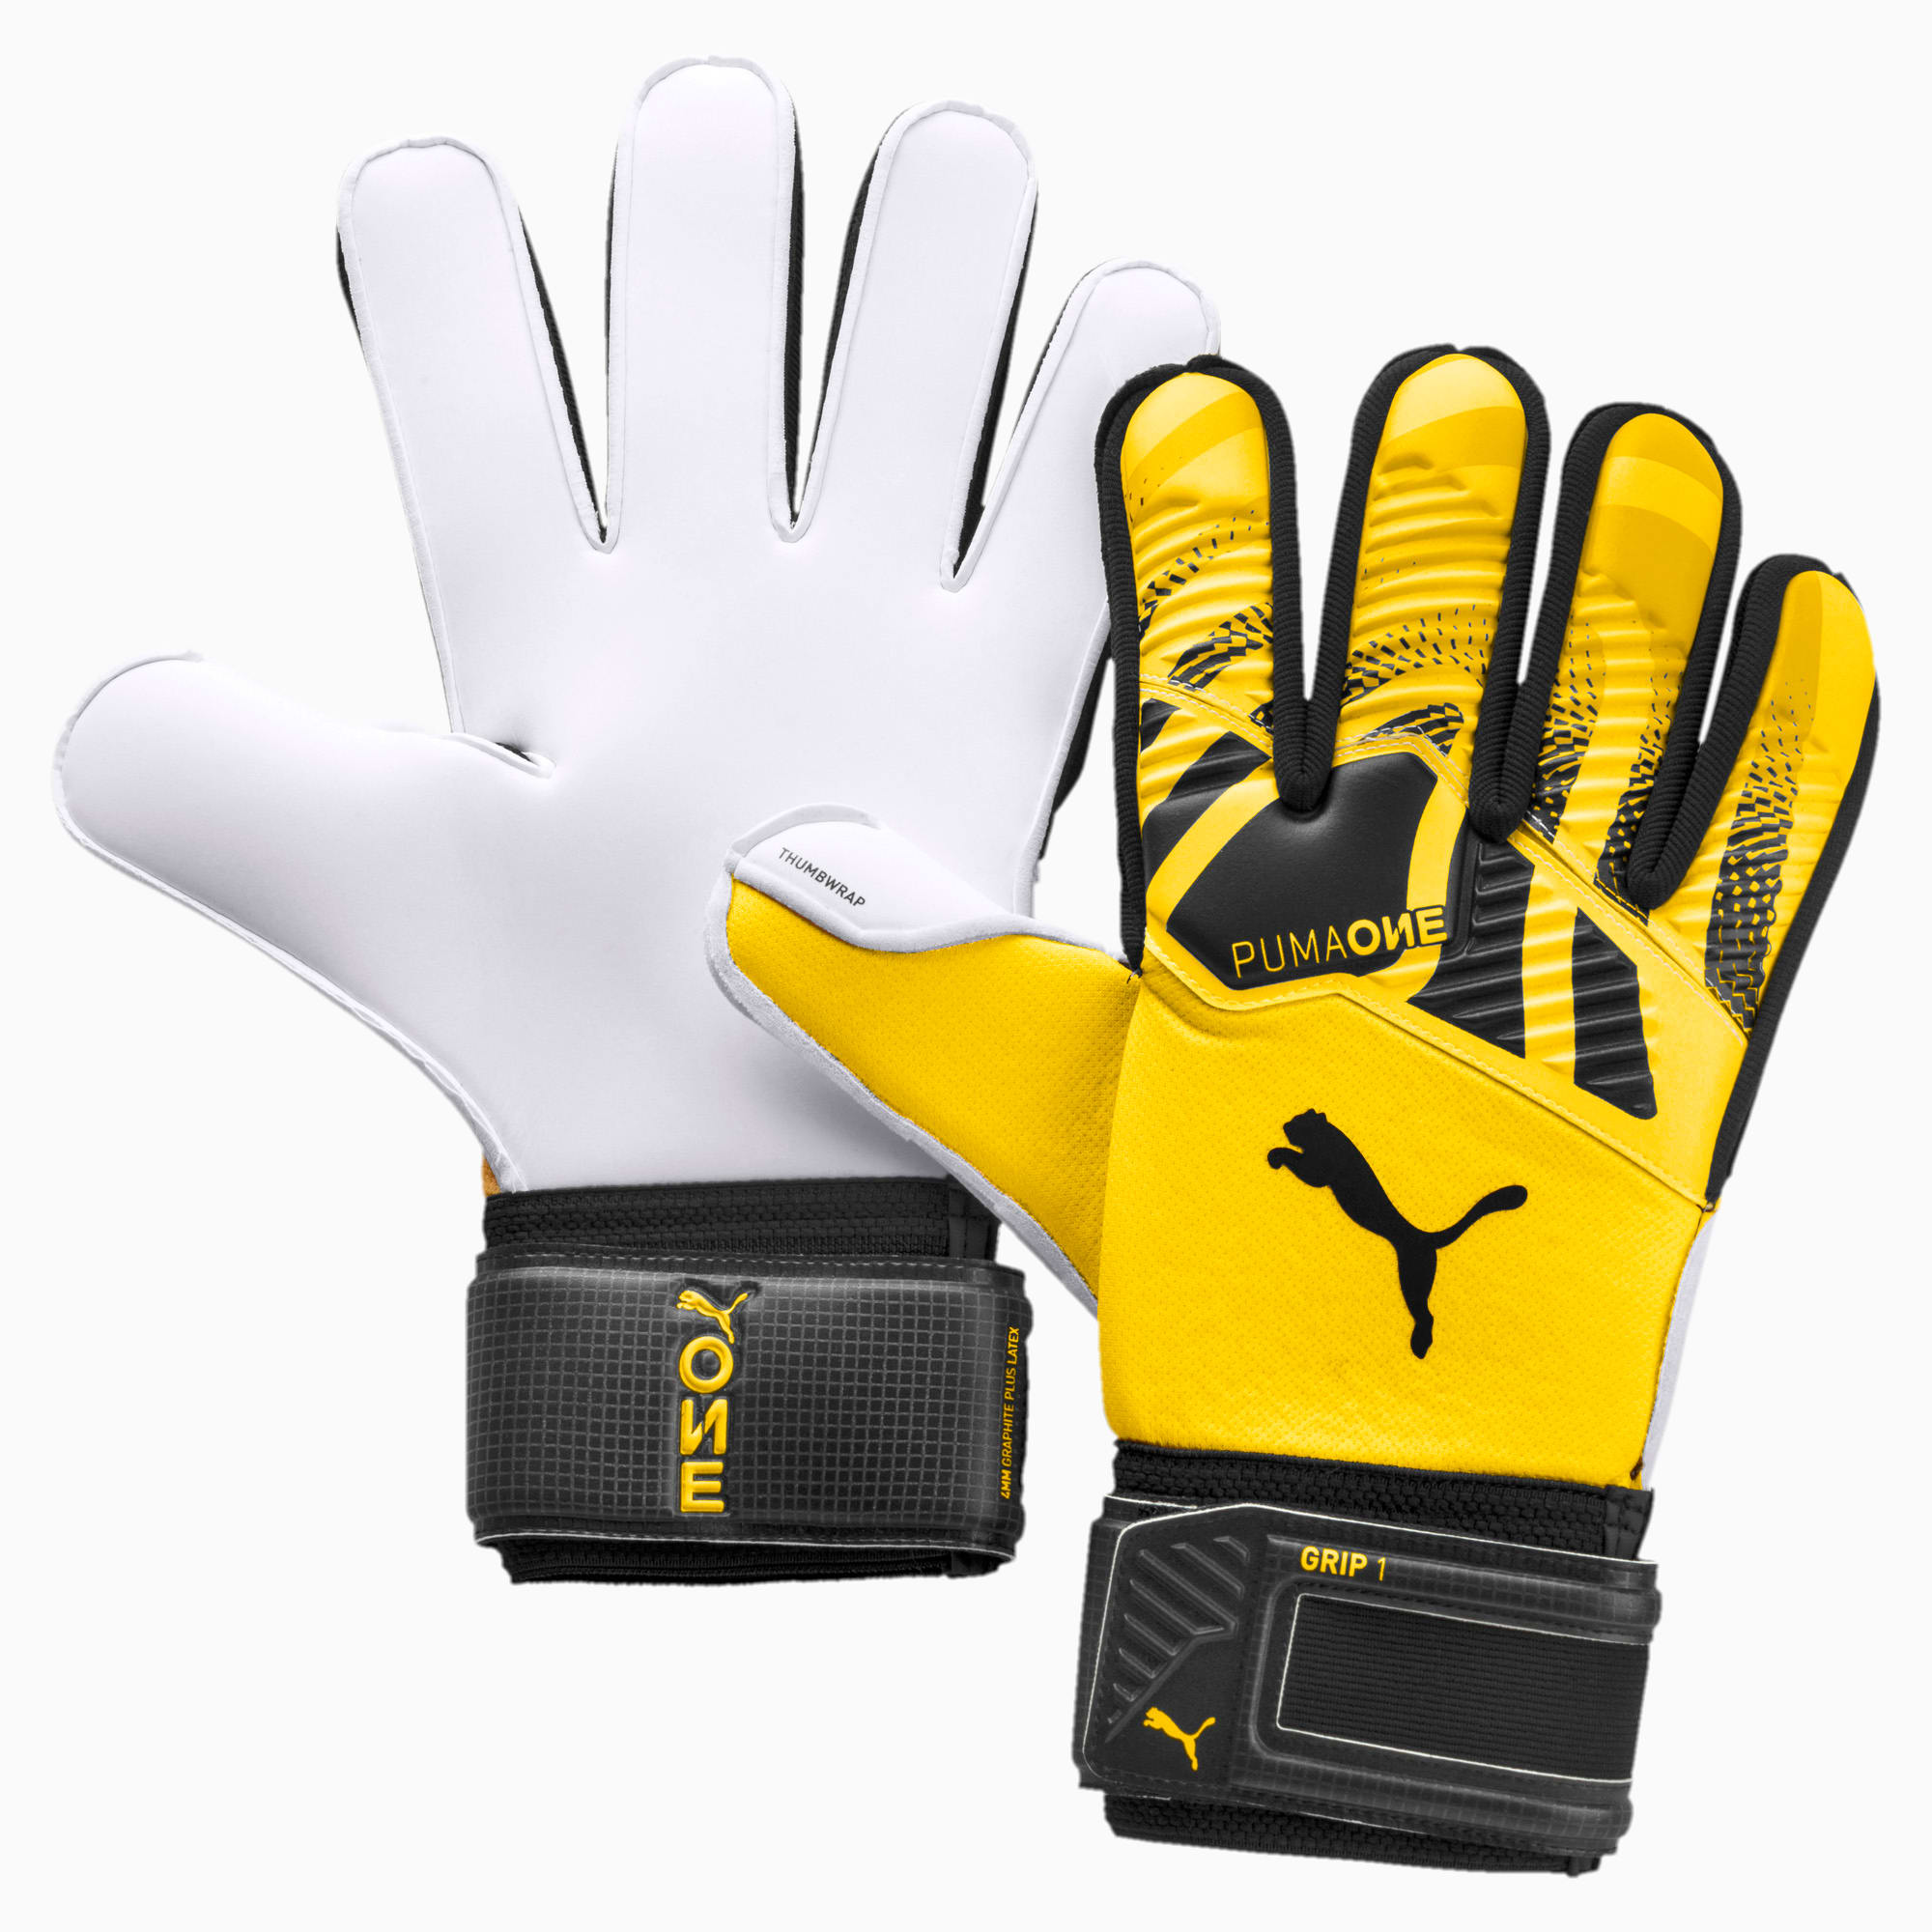 puma one goalkeeper gloves